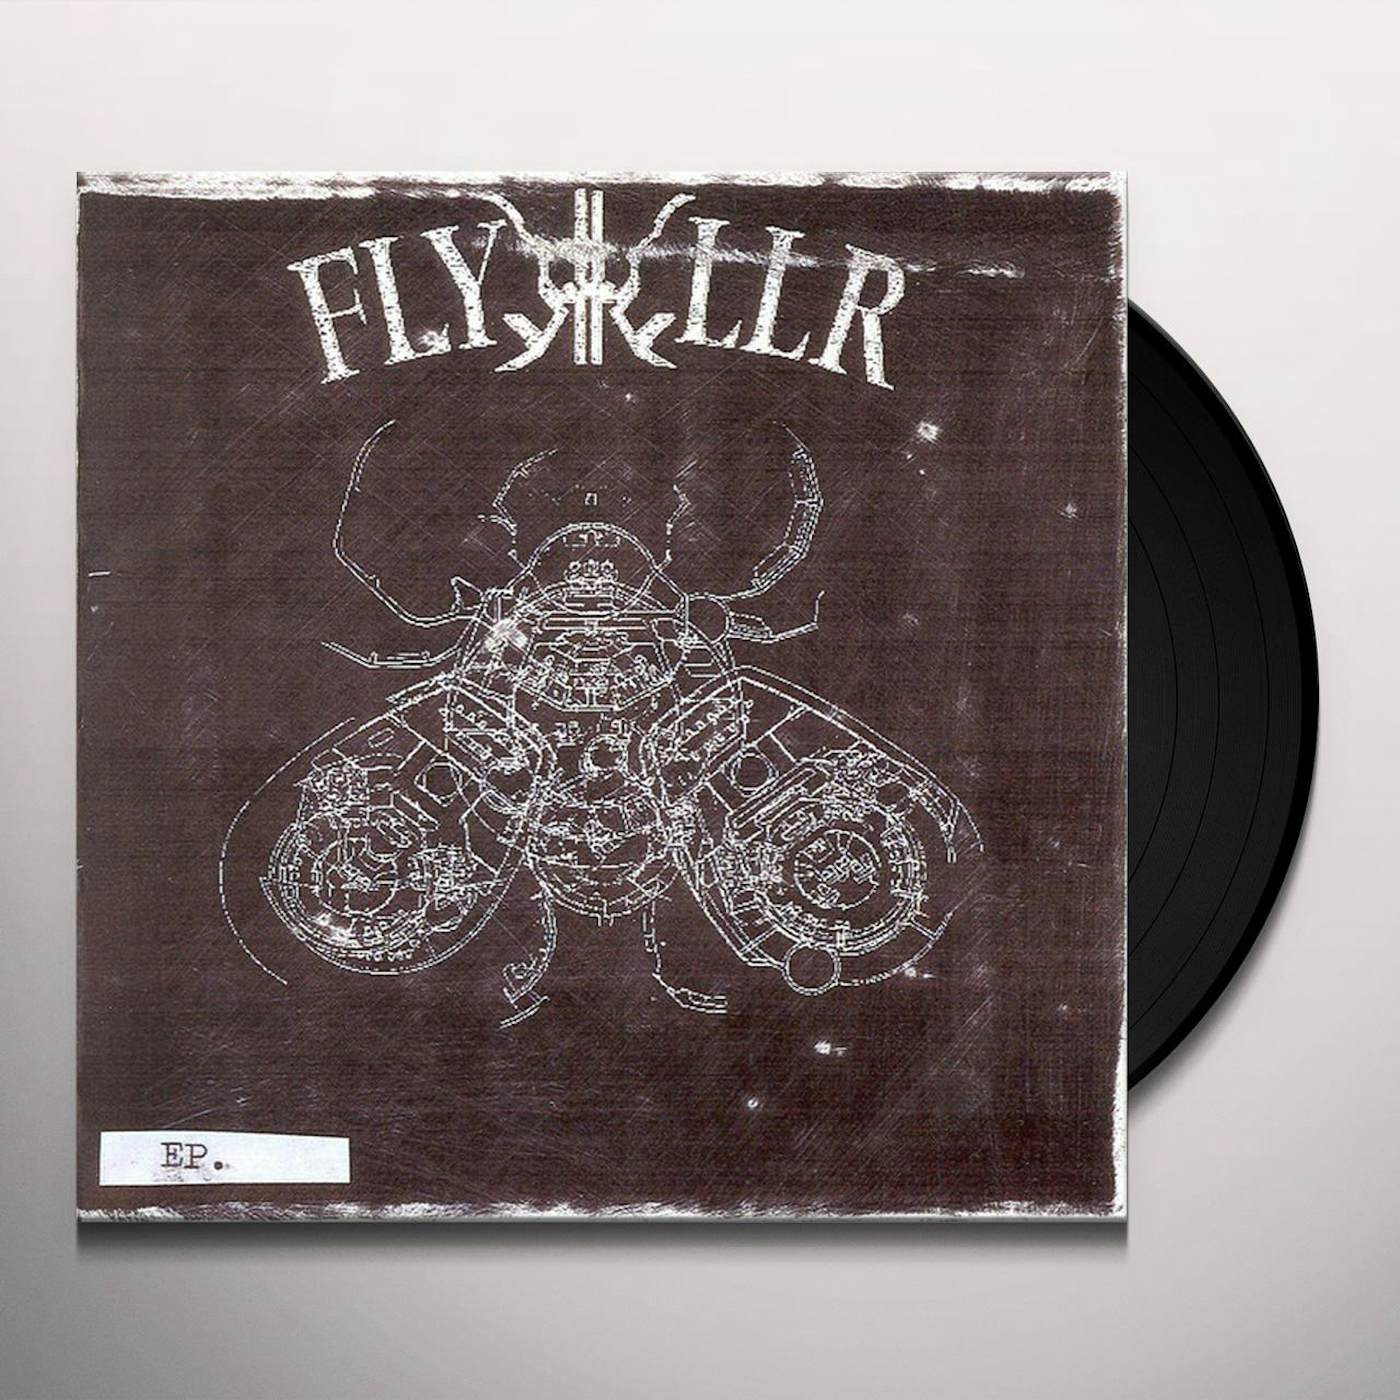 FLYKKILLER Vinyl Record